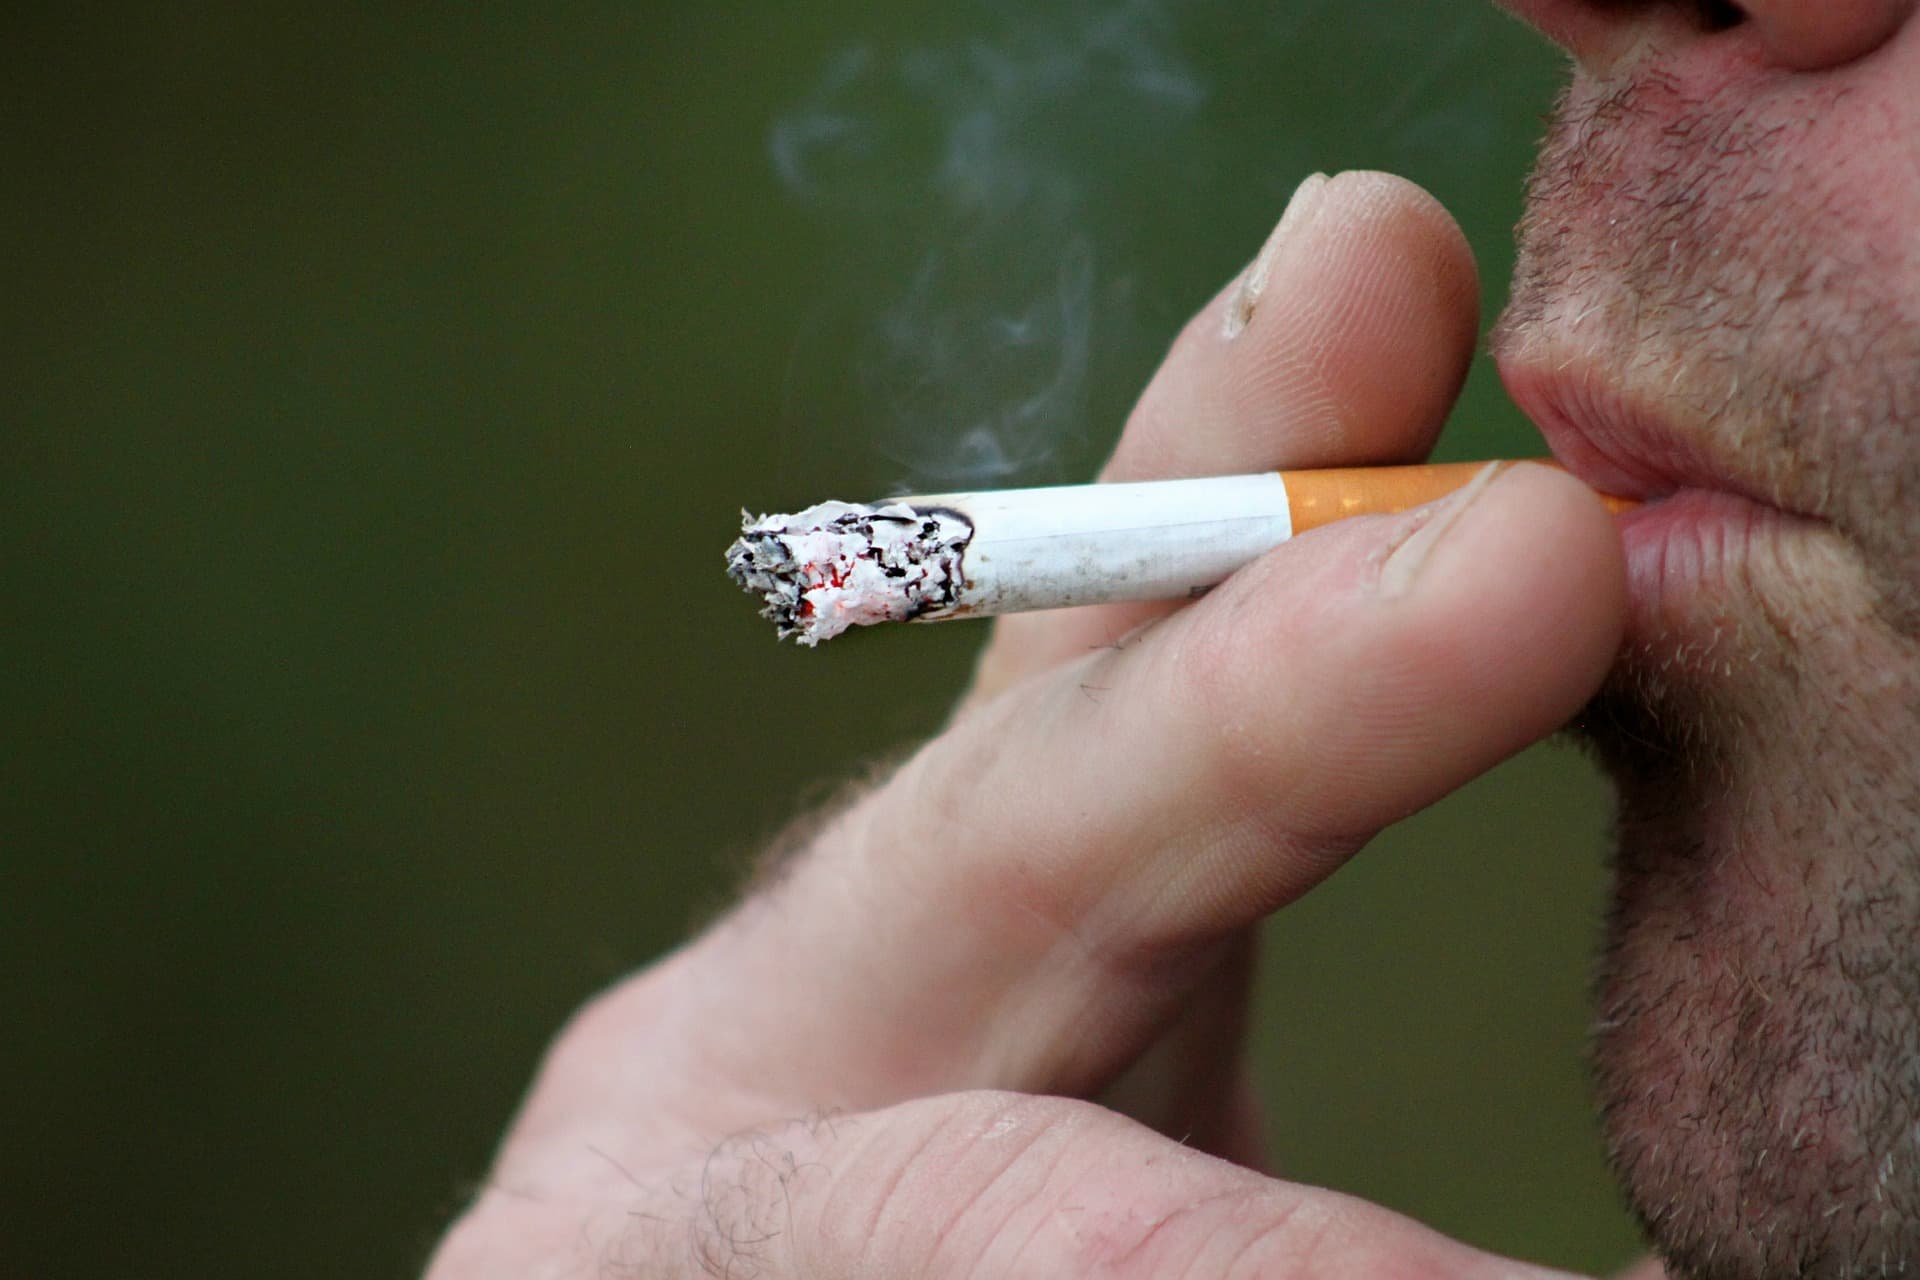 plan anti-tabac: l'interdiction dans les parcs ou sur les plages peut-elle être efficace?